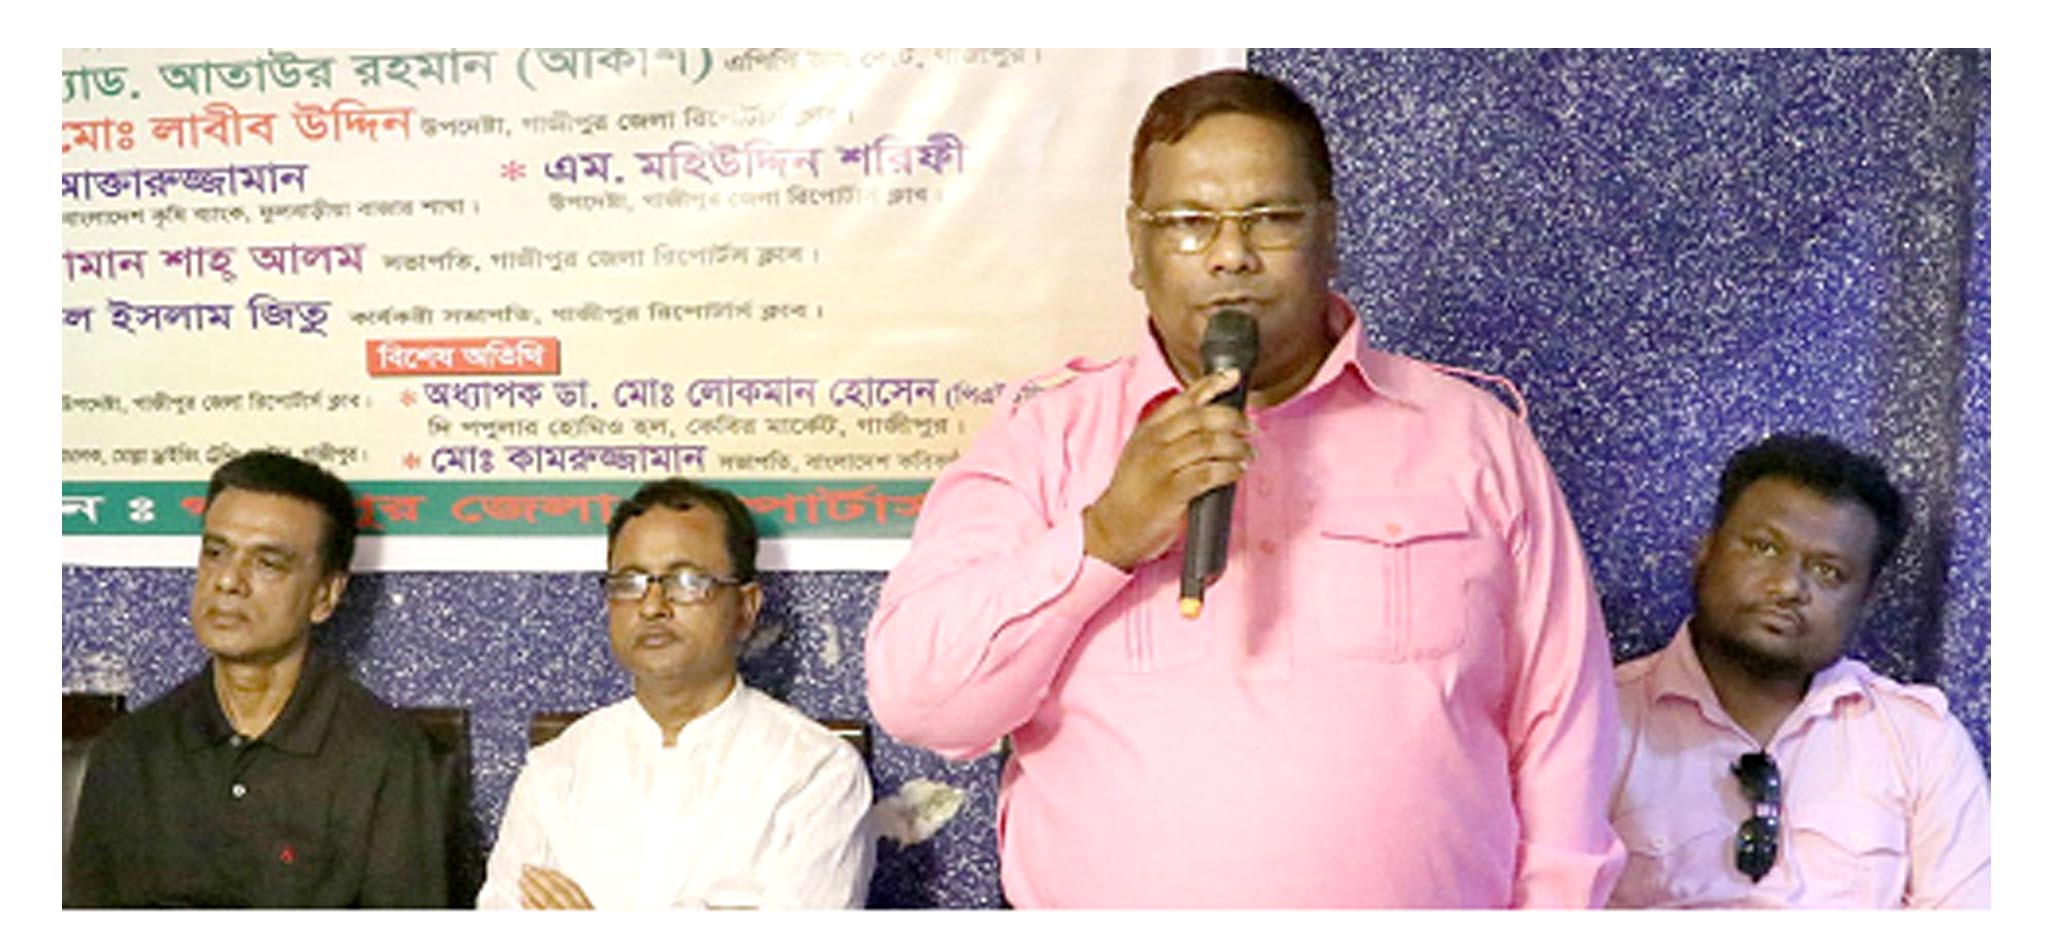 গাজীপুর জেলা রিপোর্টার্স ক্লাবেরবার্ষিক দোয়া ও সাধারণ সভা অনুষ্ঠিত